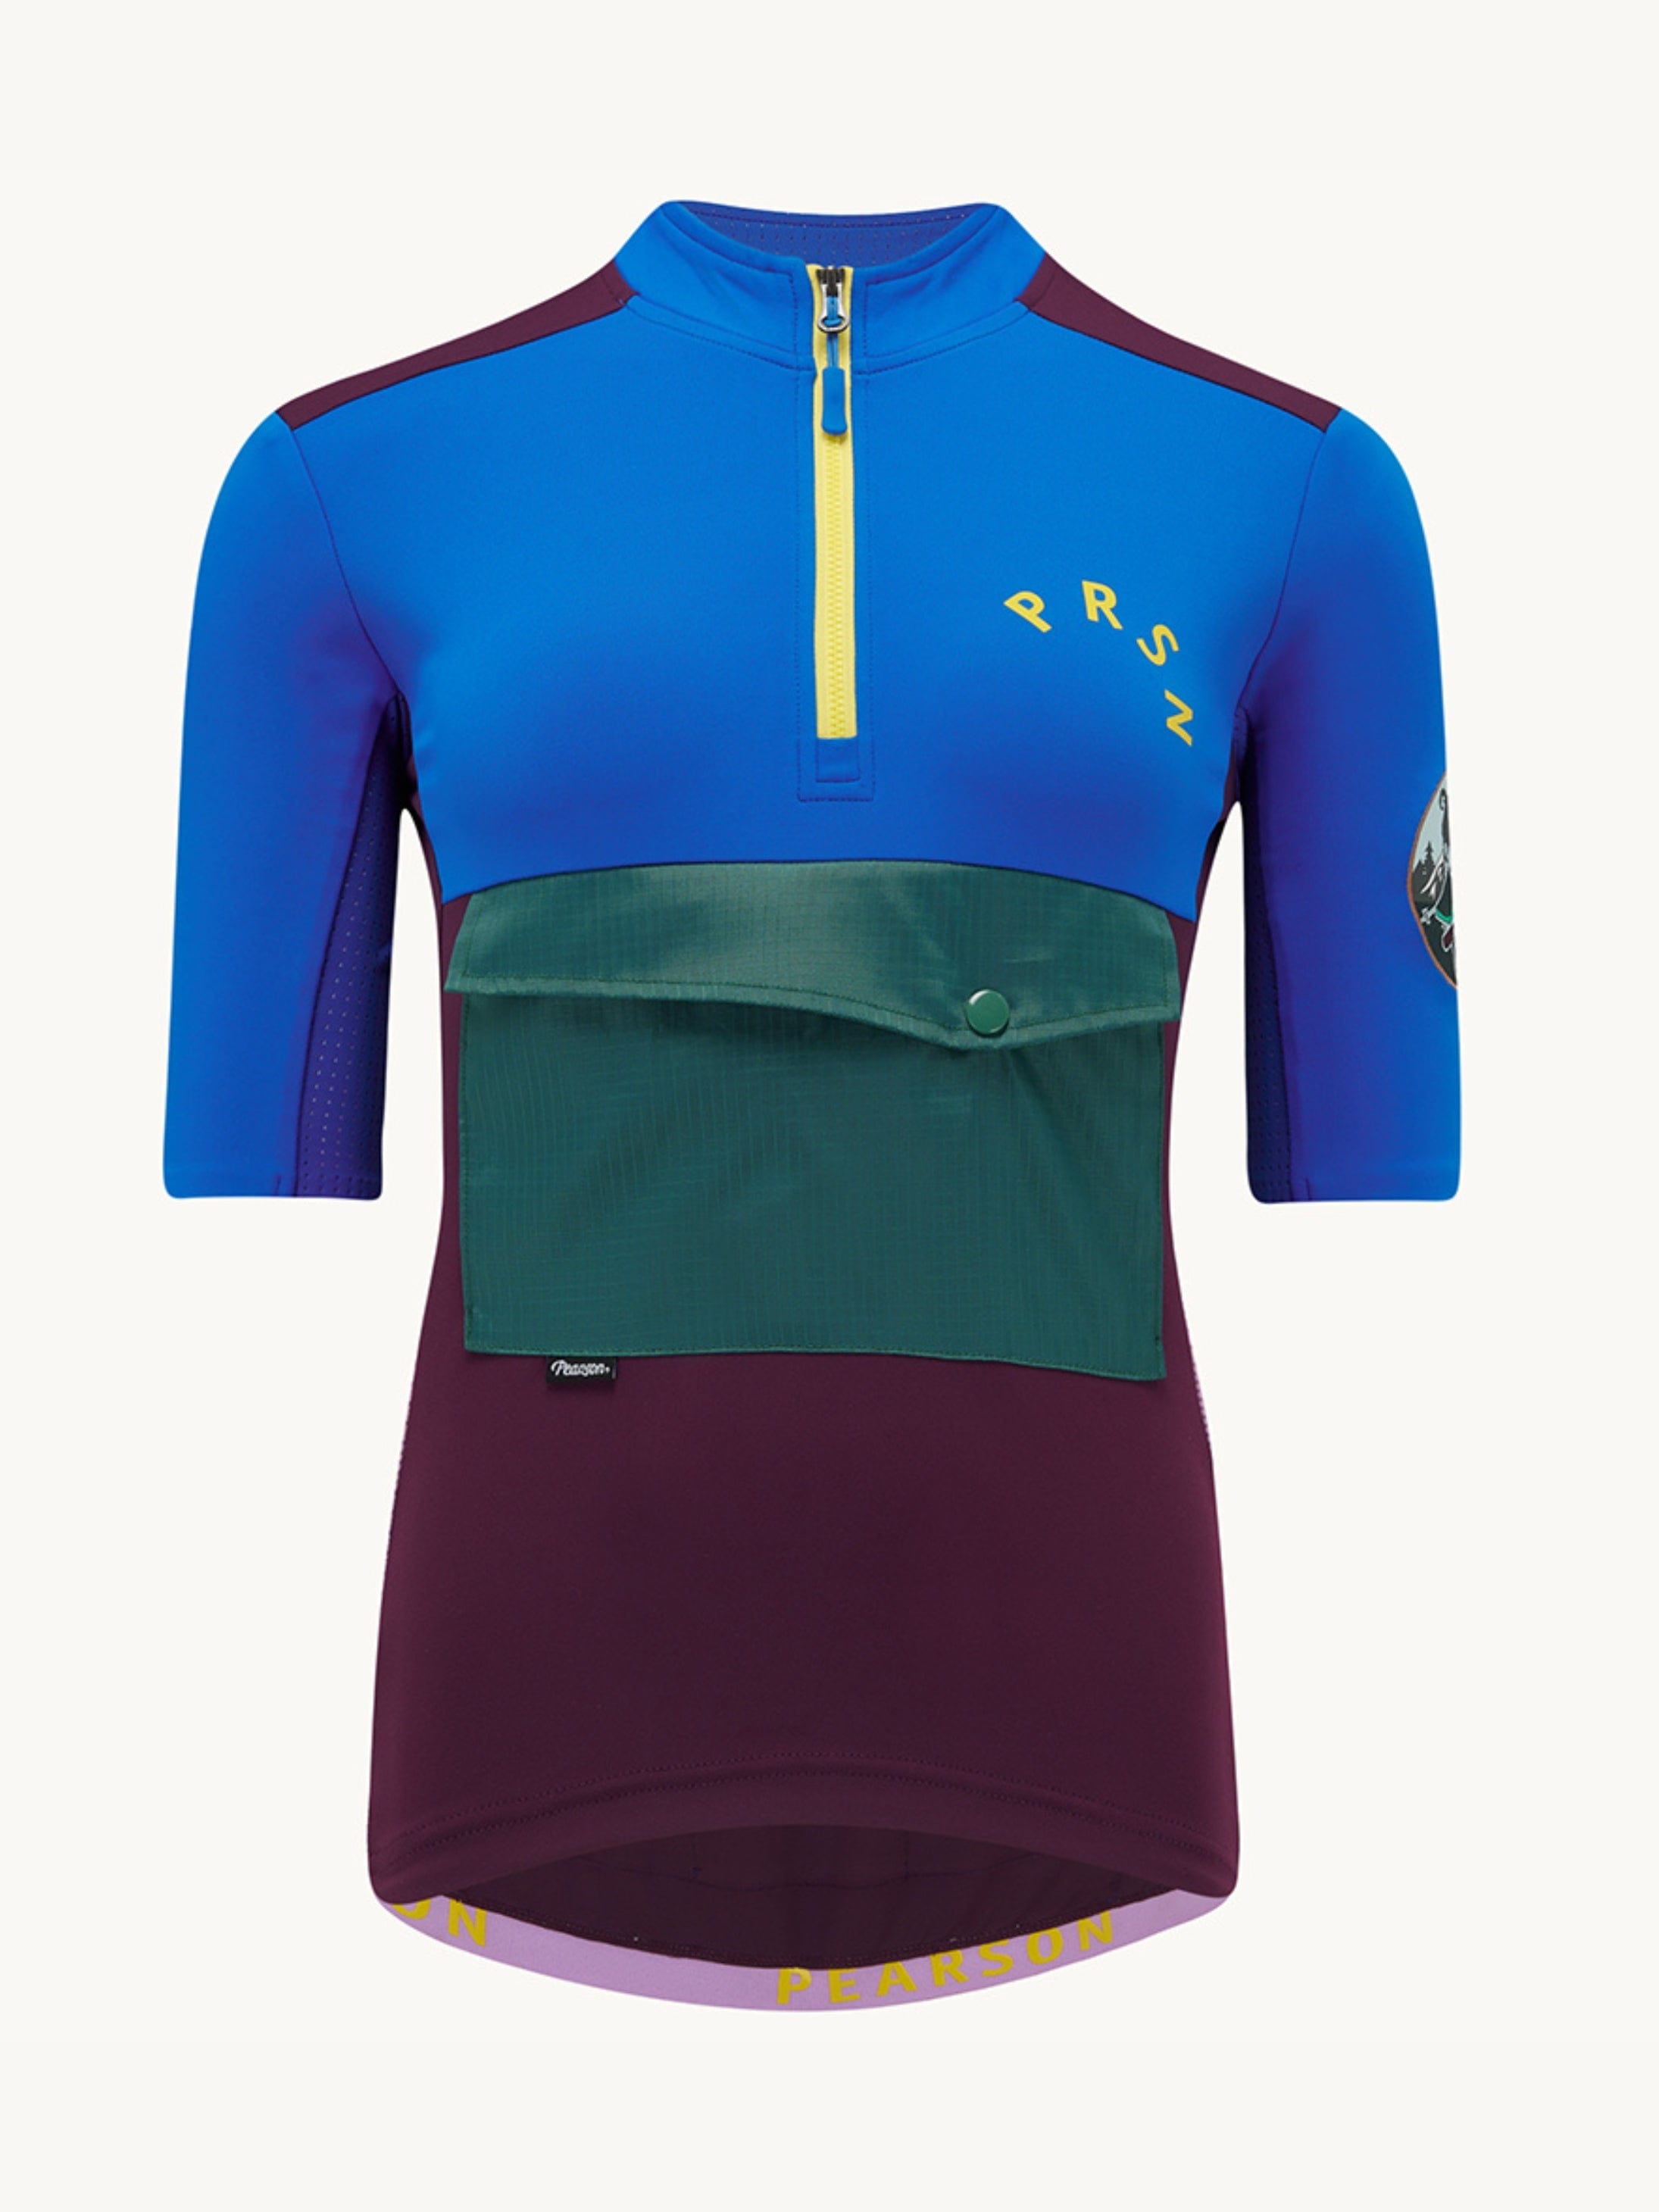 Pearson Cycles Pearson1860, Stowaway - Women's Adventure Short Sleeve Jersey, Deep Purple / M